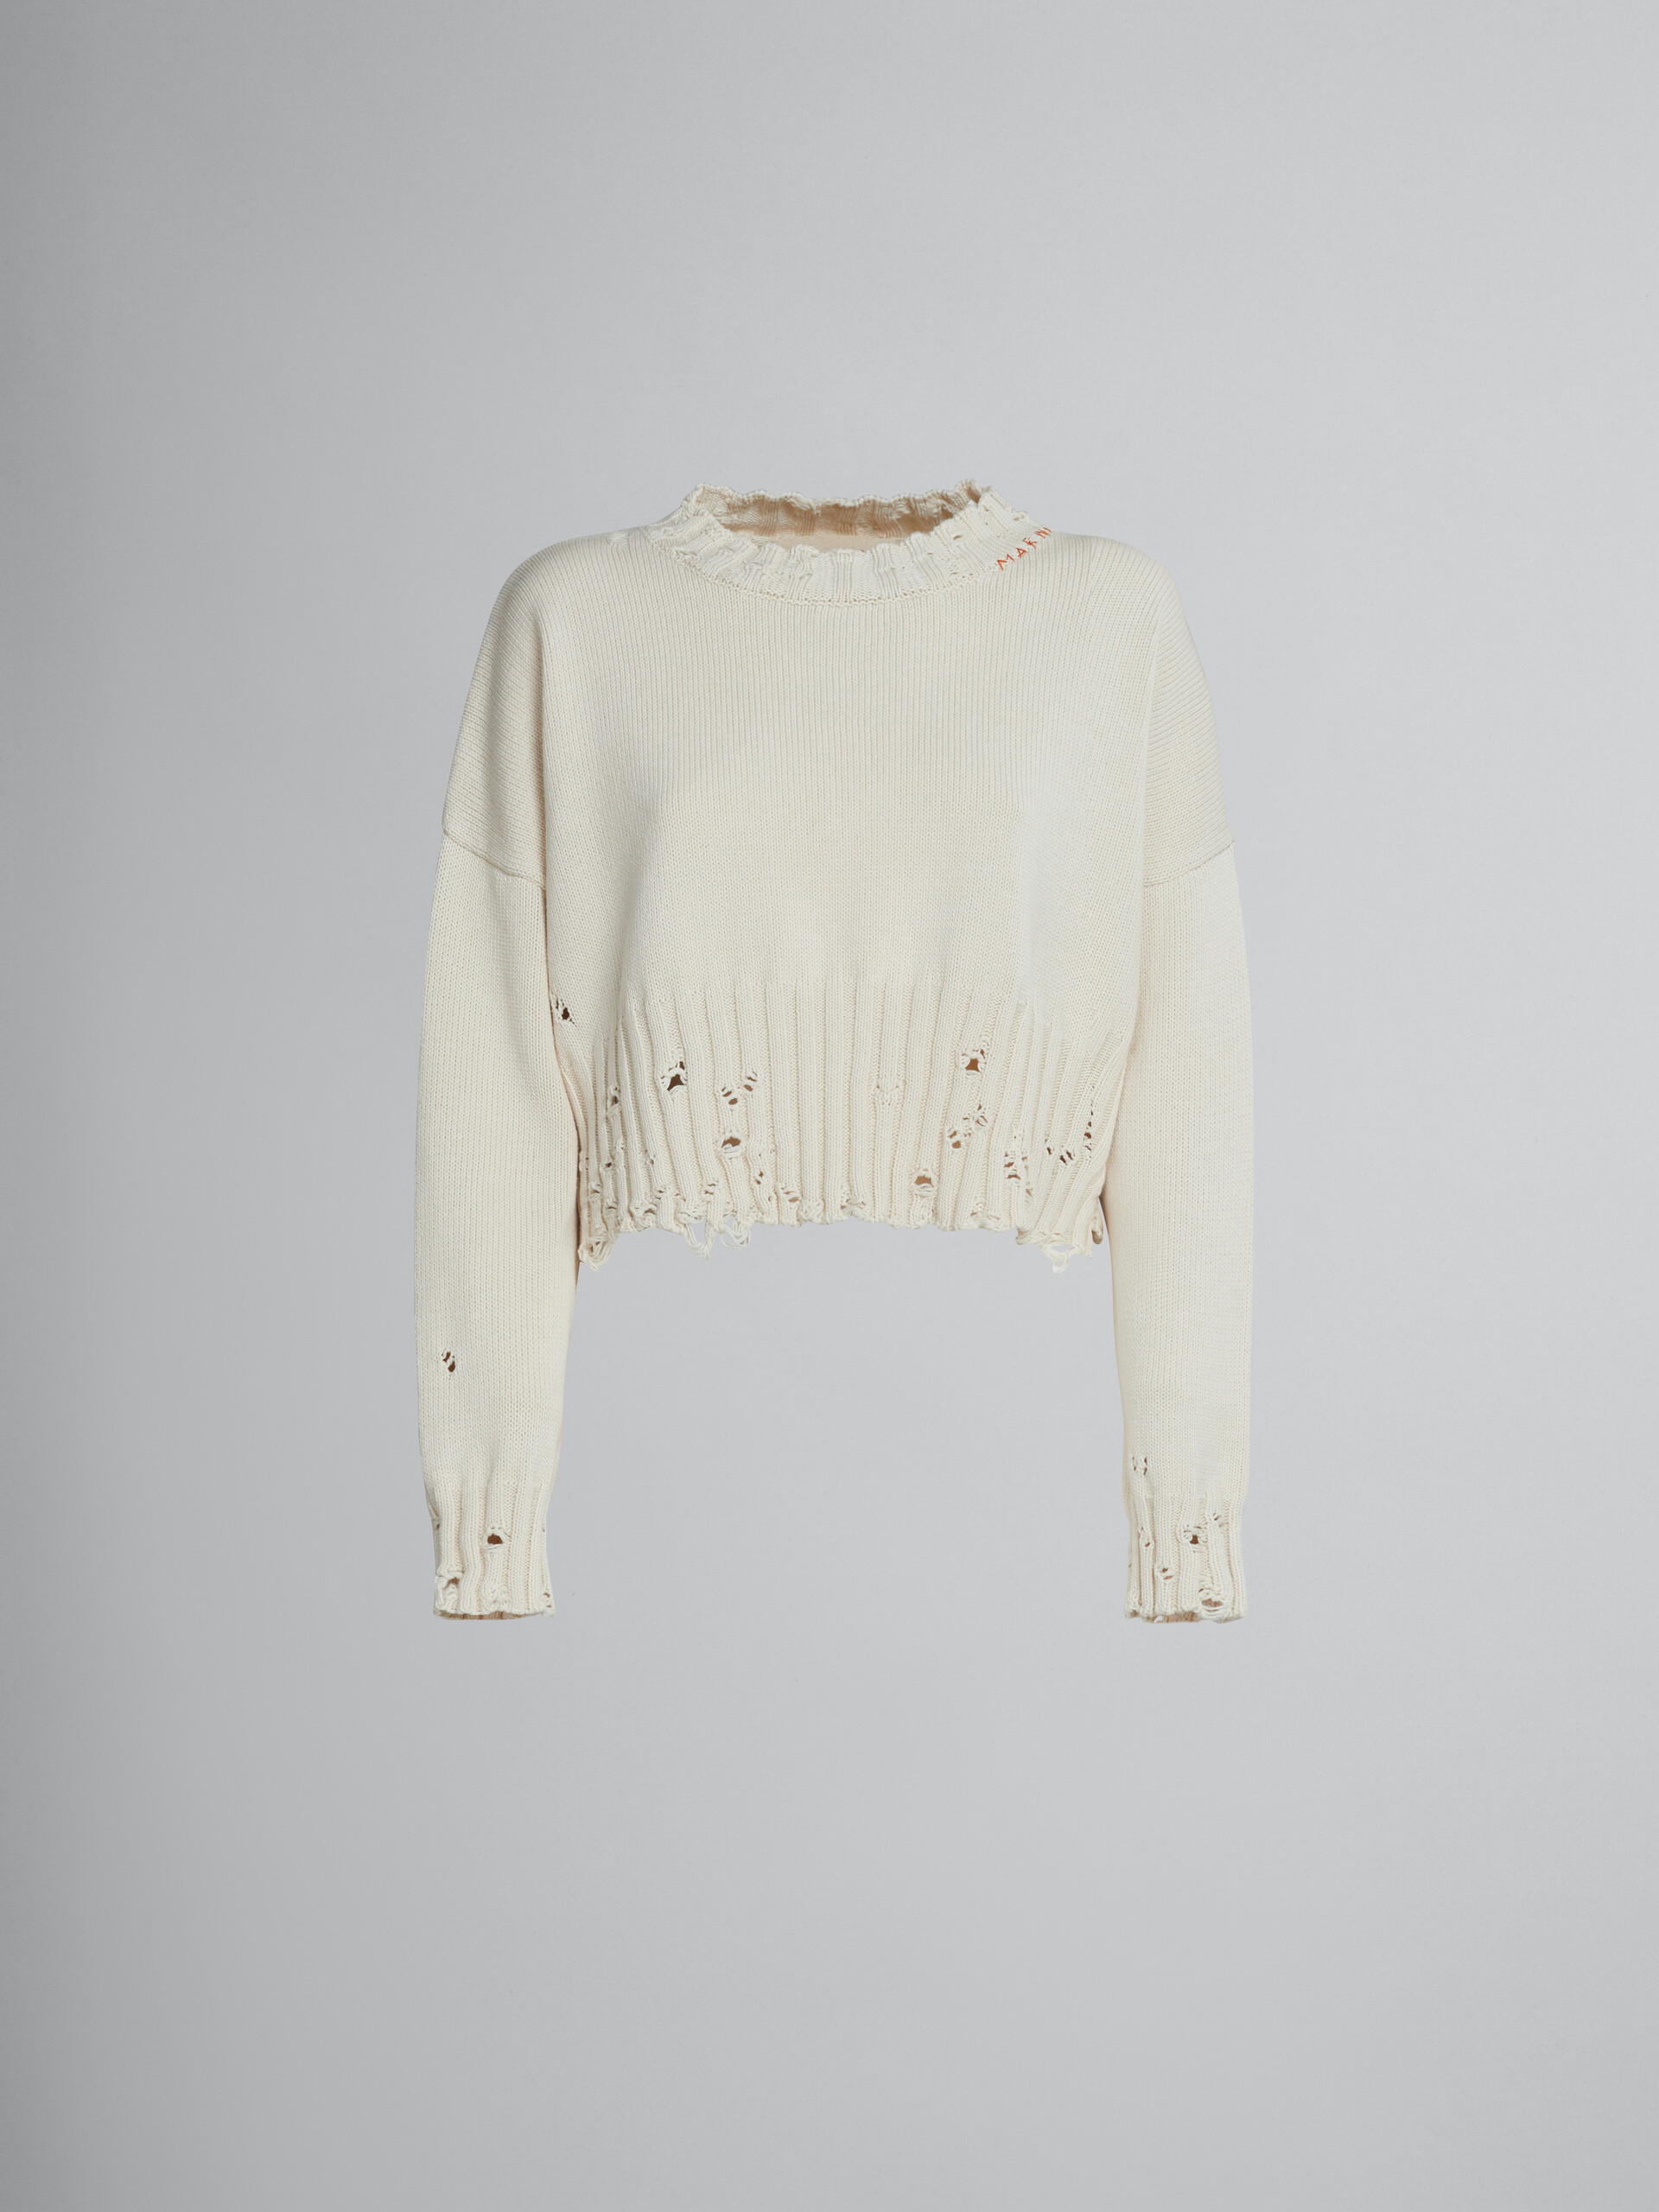 Jersey corto de algodón blanco - jerseys - Image 1